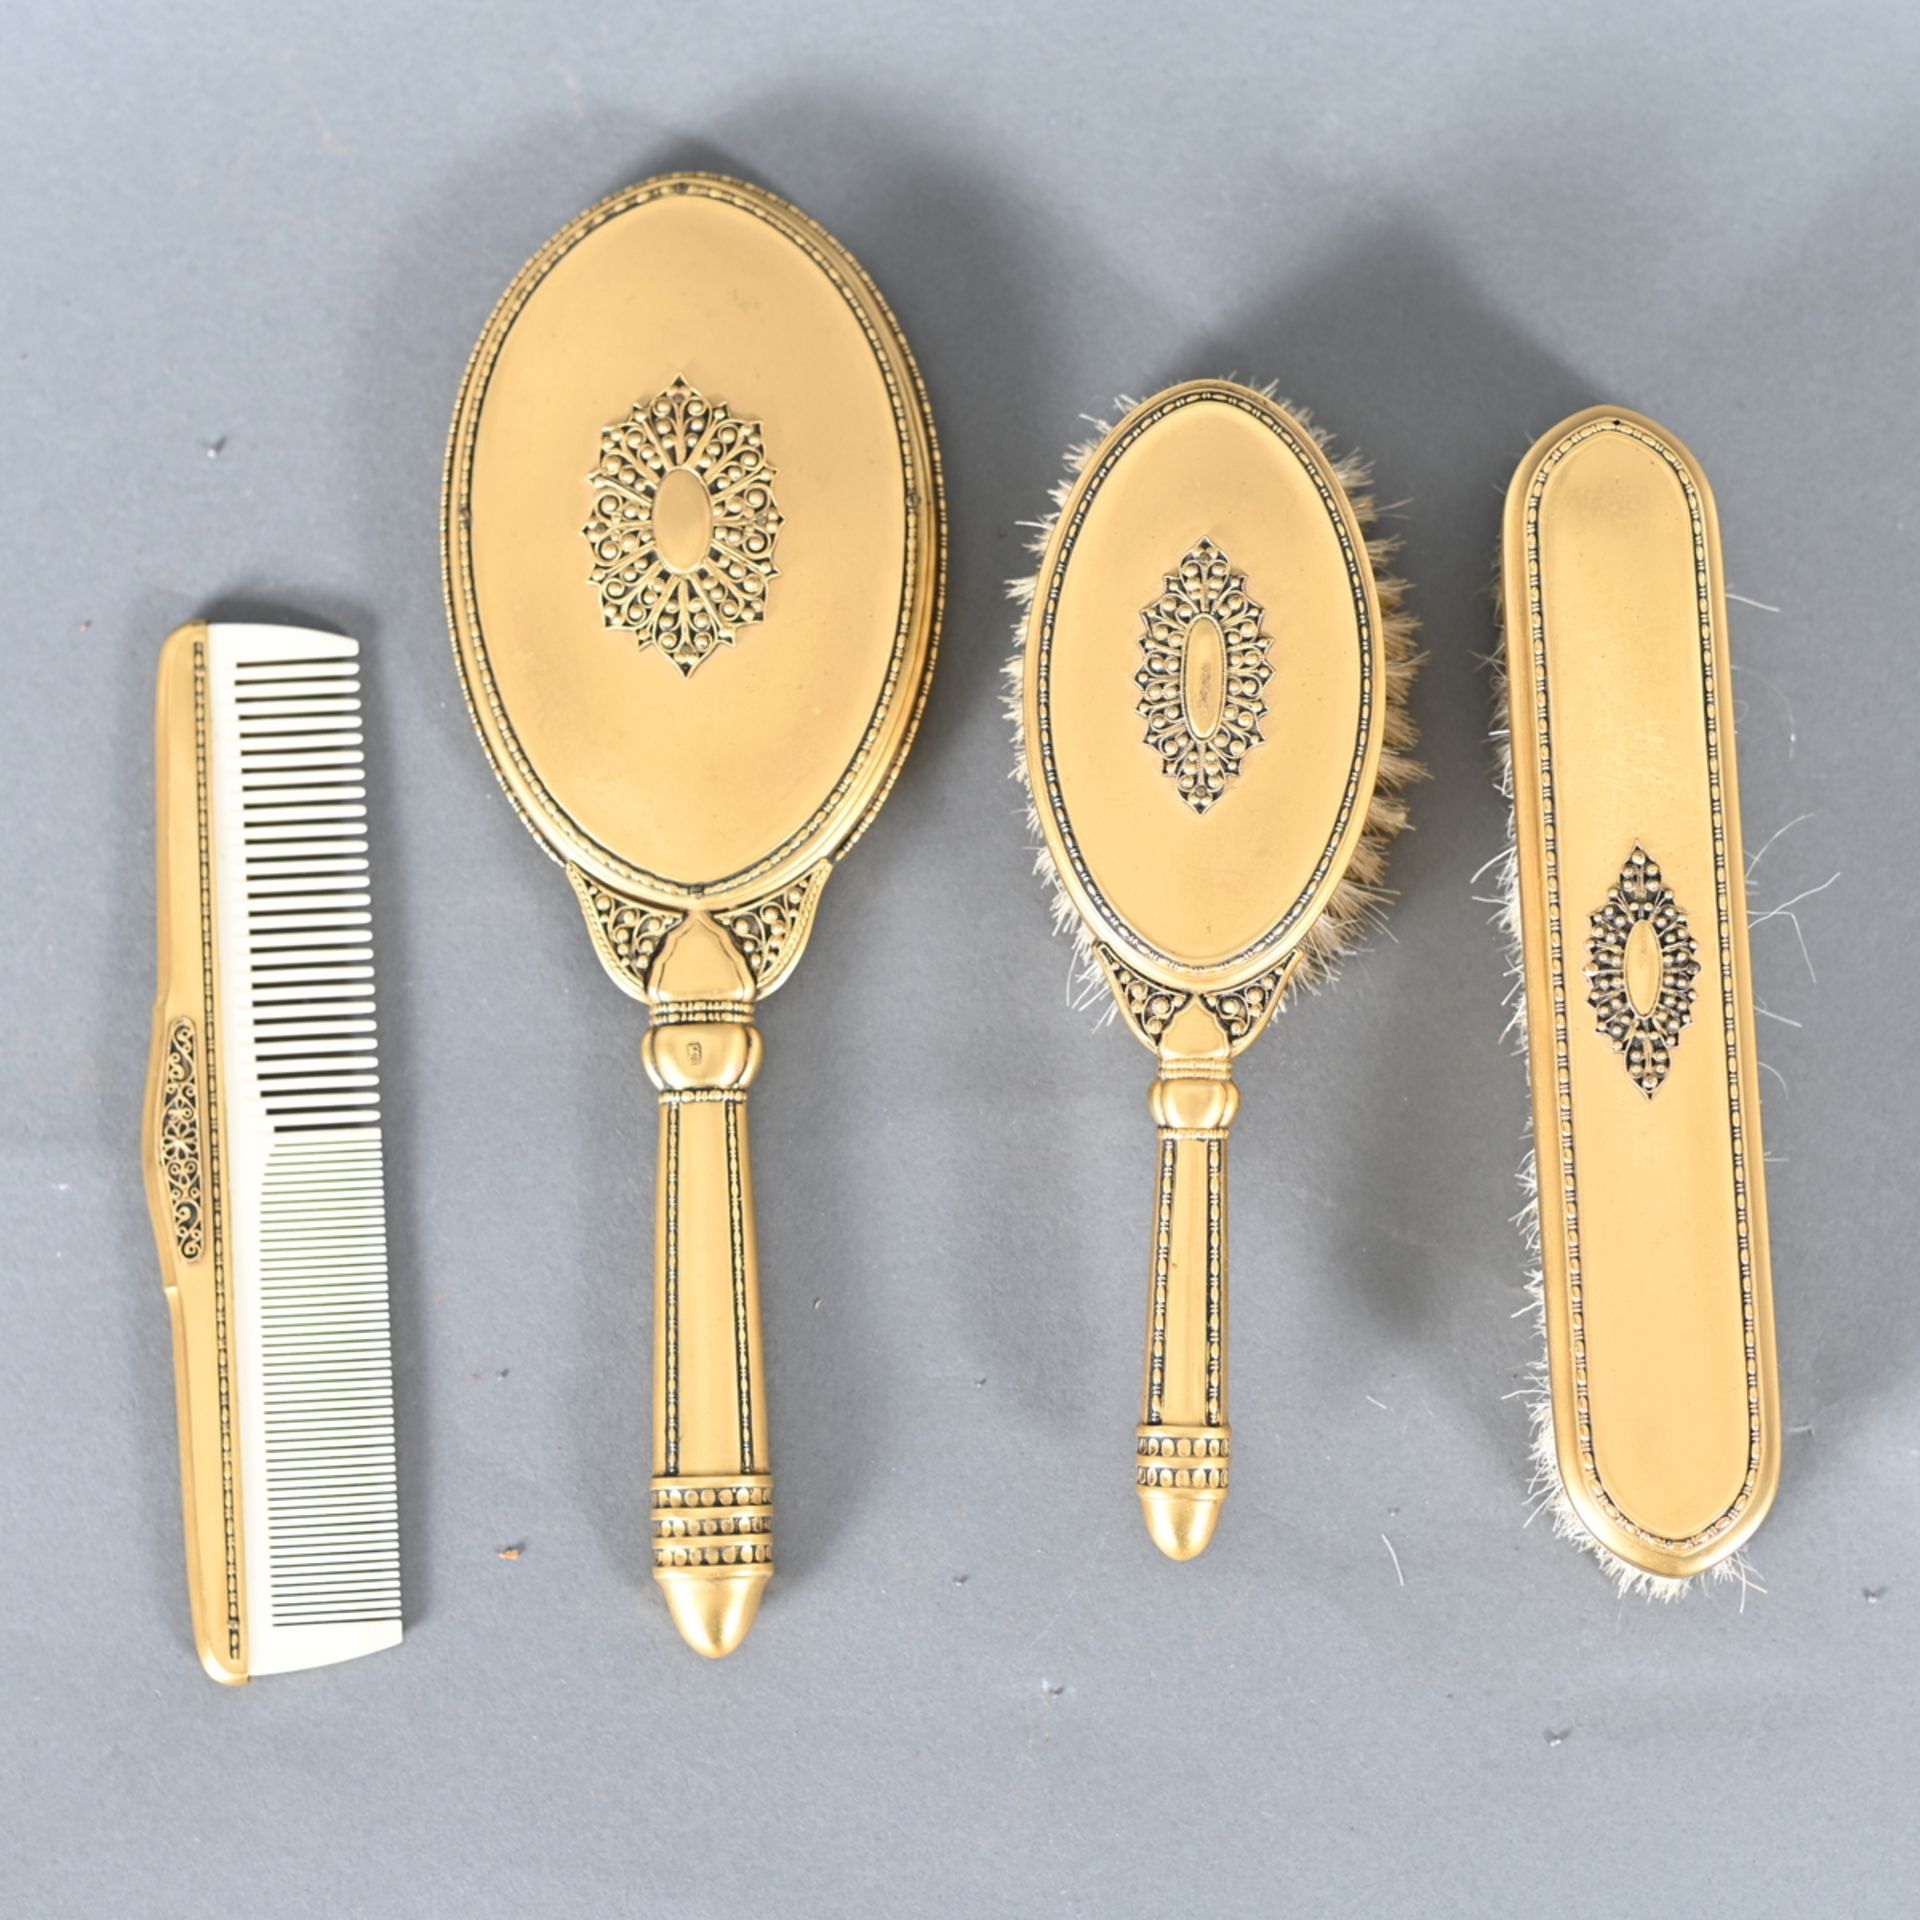 Frisiertoiletten-Garnitur, vier Teile, um 1920, Metall vergoldet, Perlenbandverzierung, Spiegel